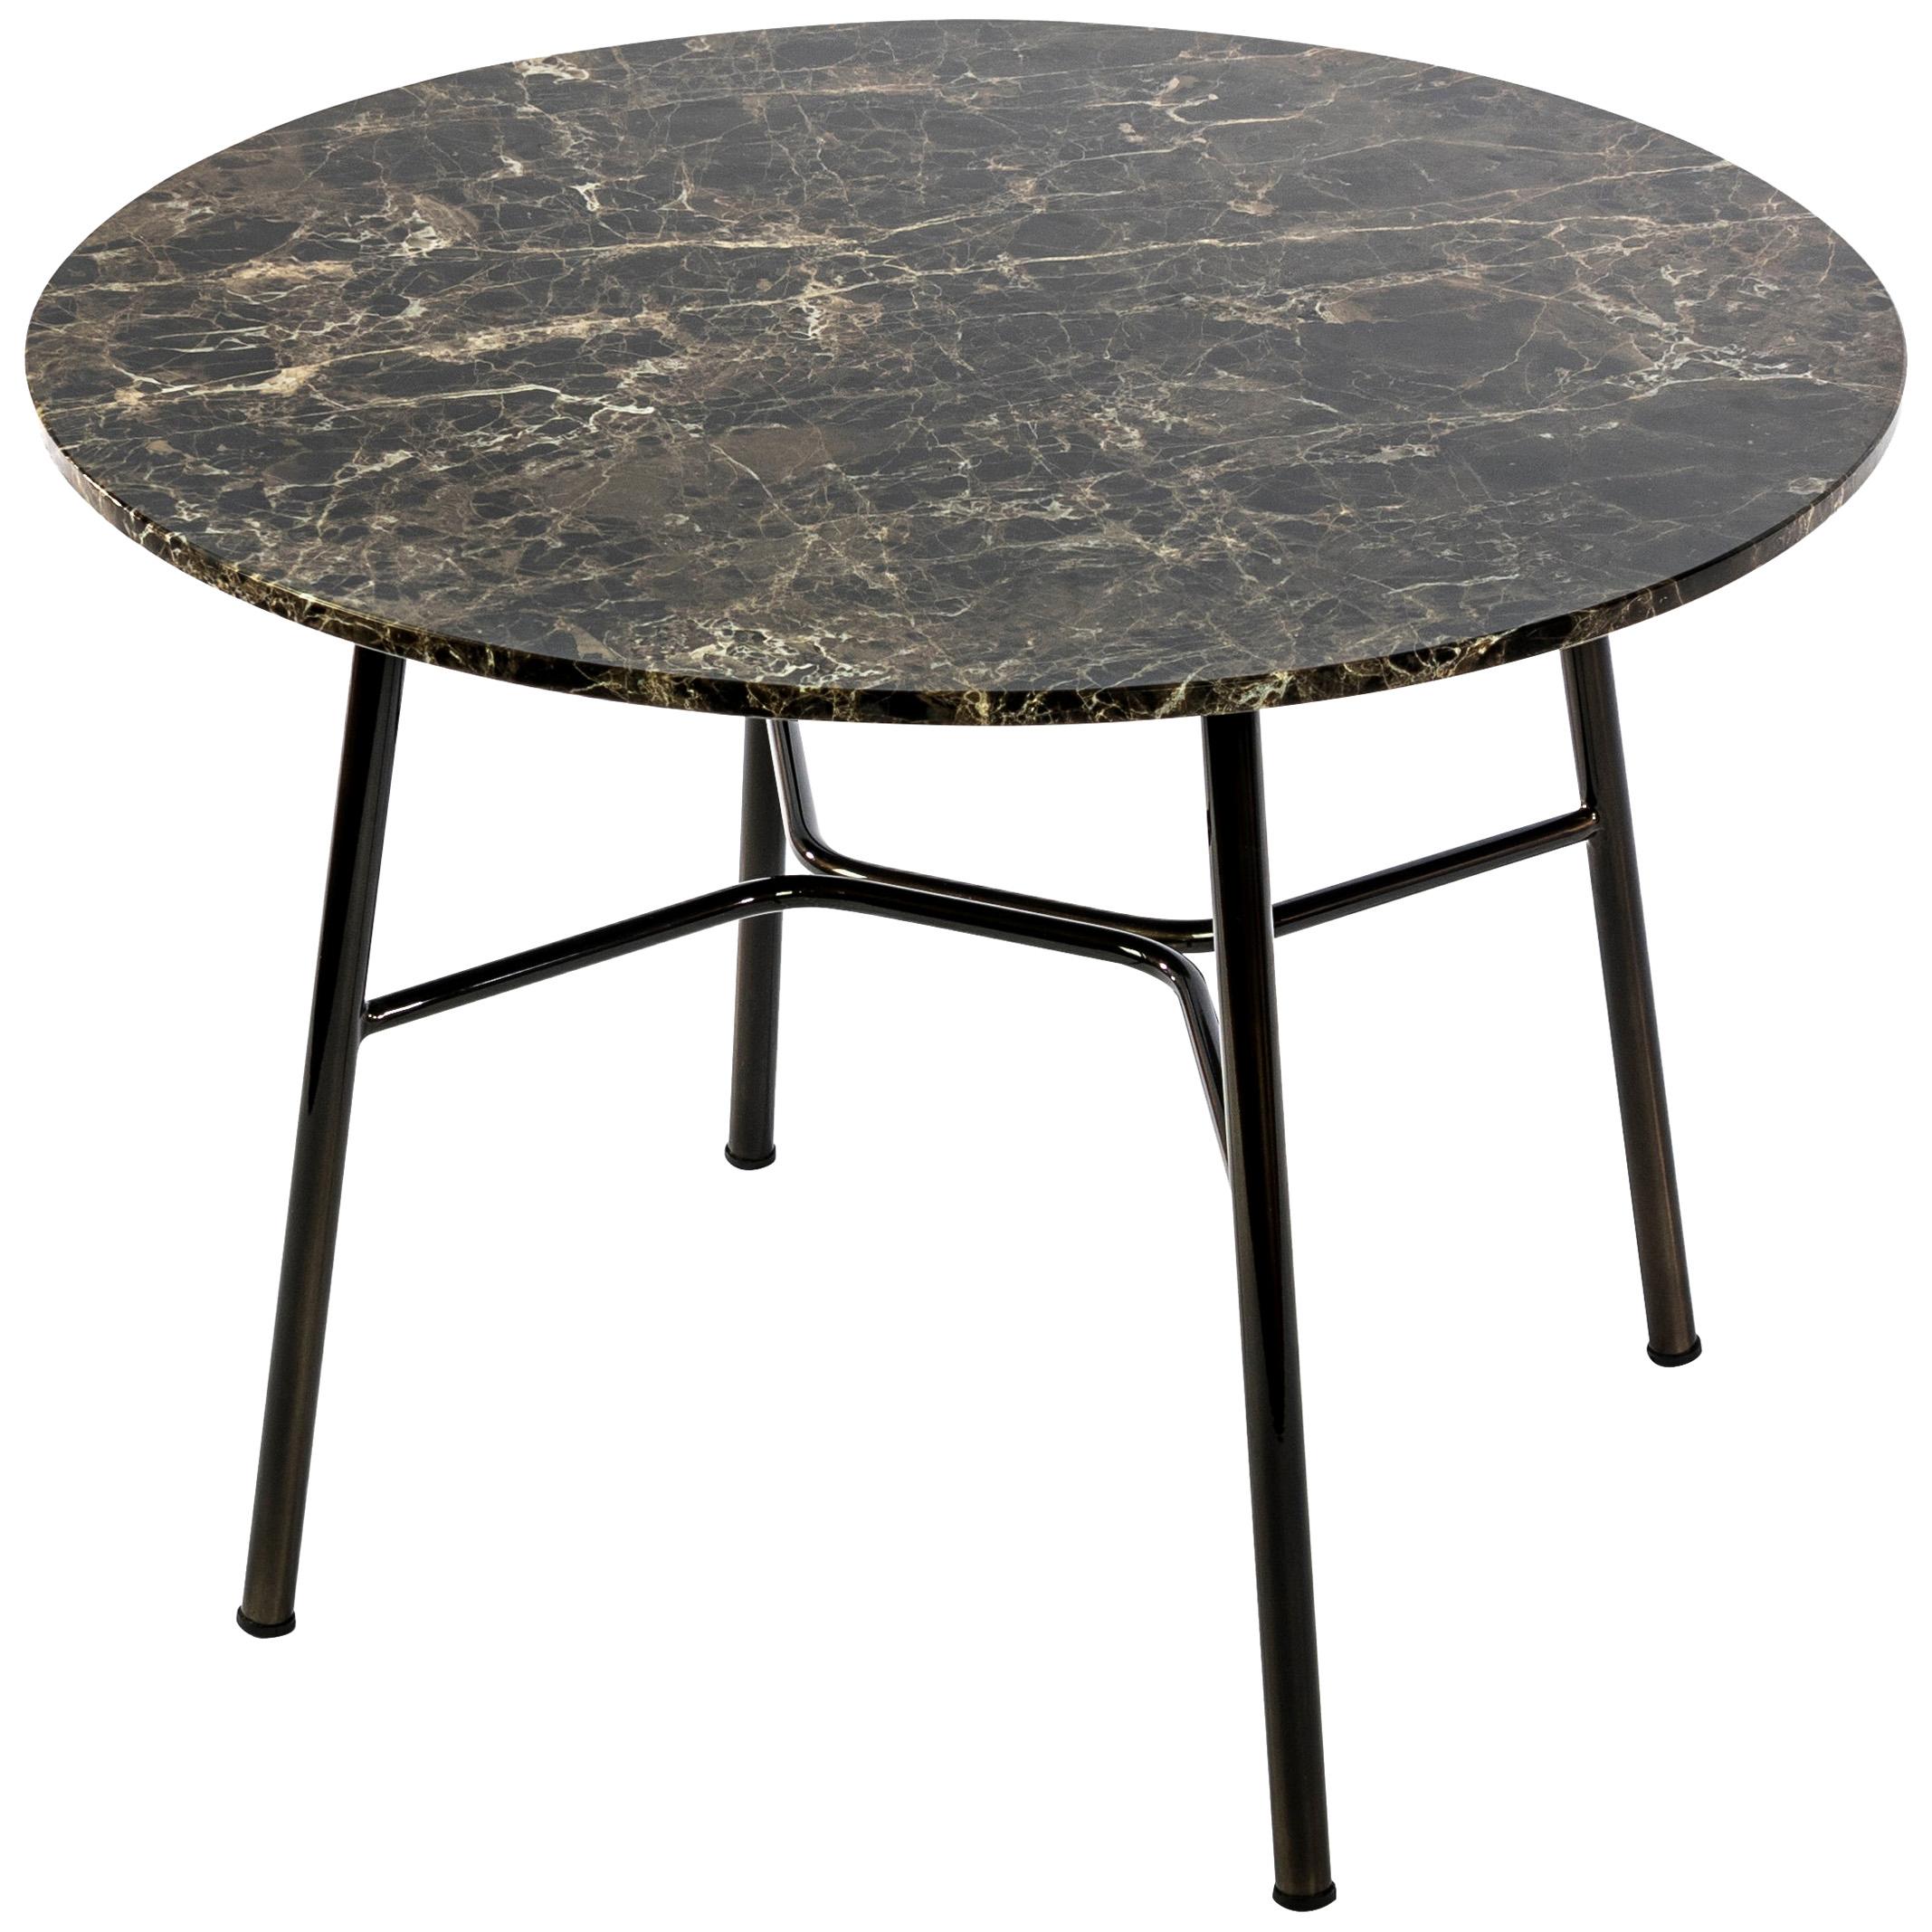 Petite table Yuki, cadre métallique, rond, couleur marron, design, table basse, marbre